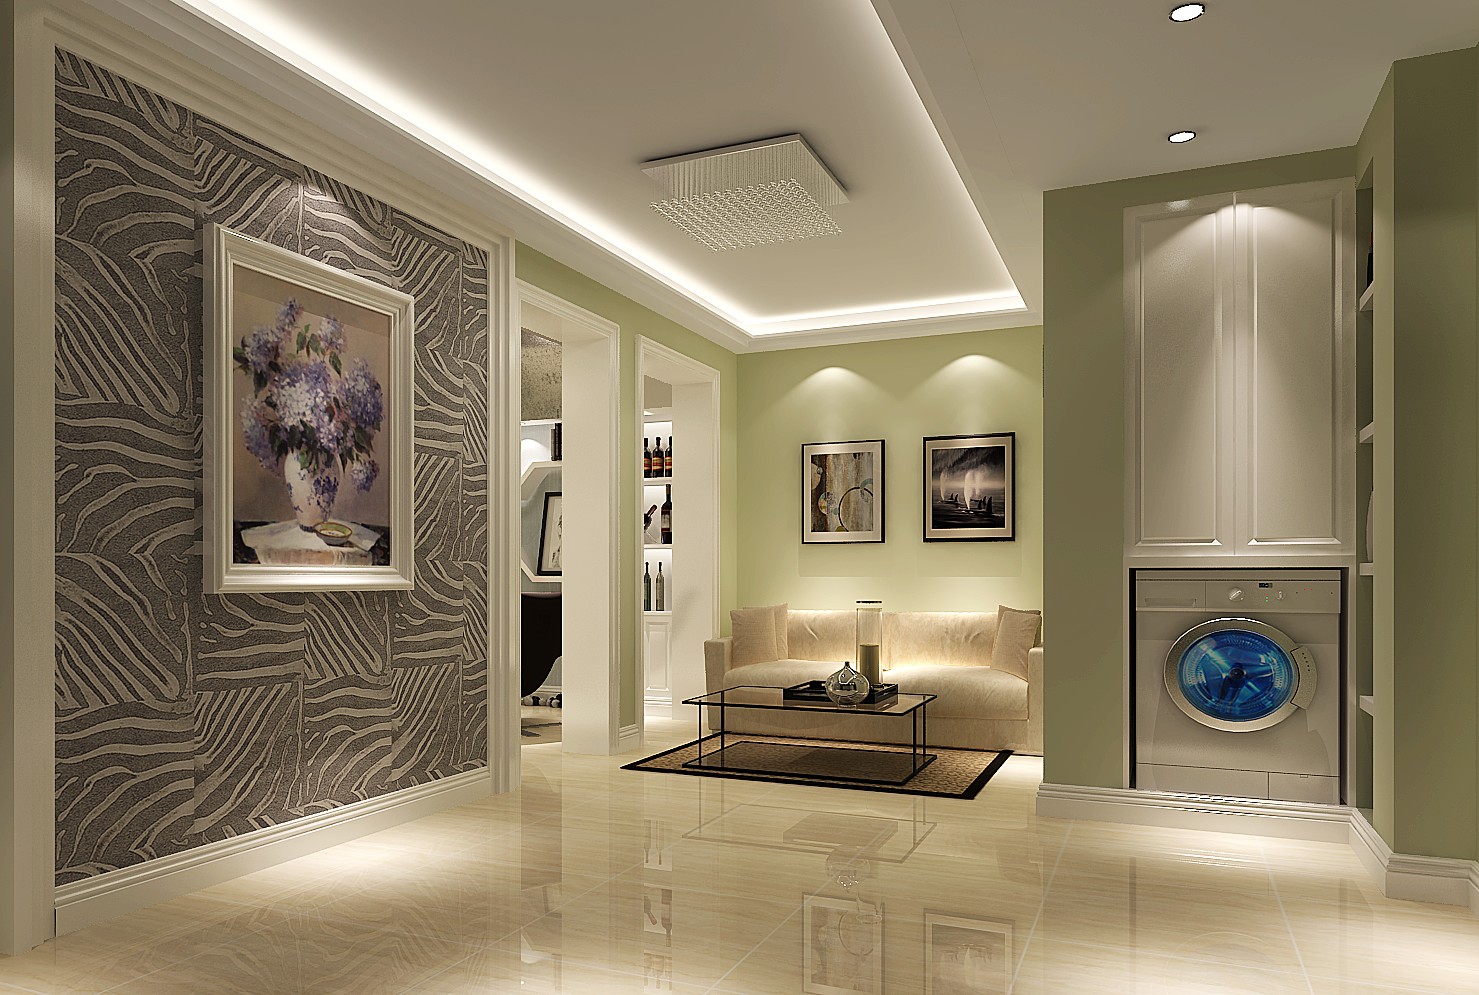 简约 欧式 小资 客厅图片来自高度国际装饰华华在北四环东路的分享